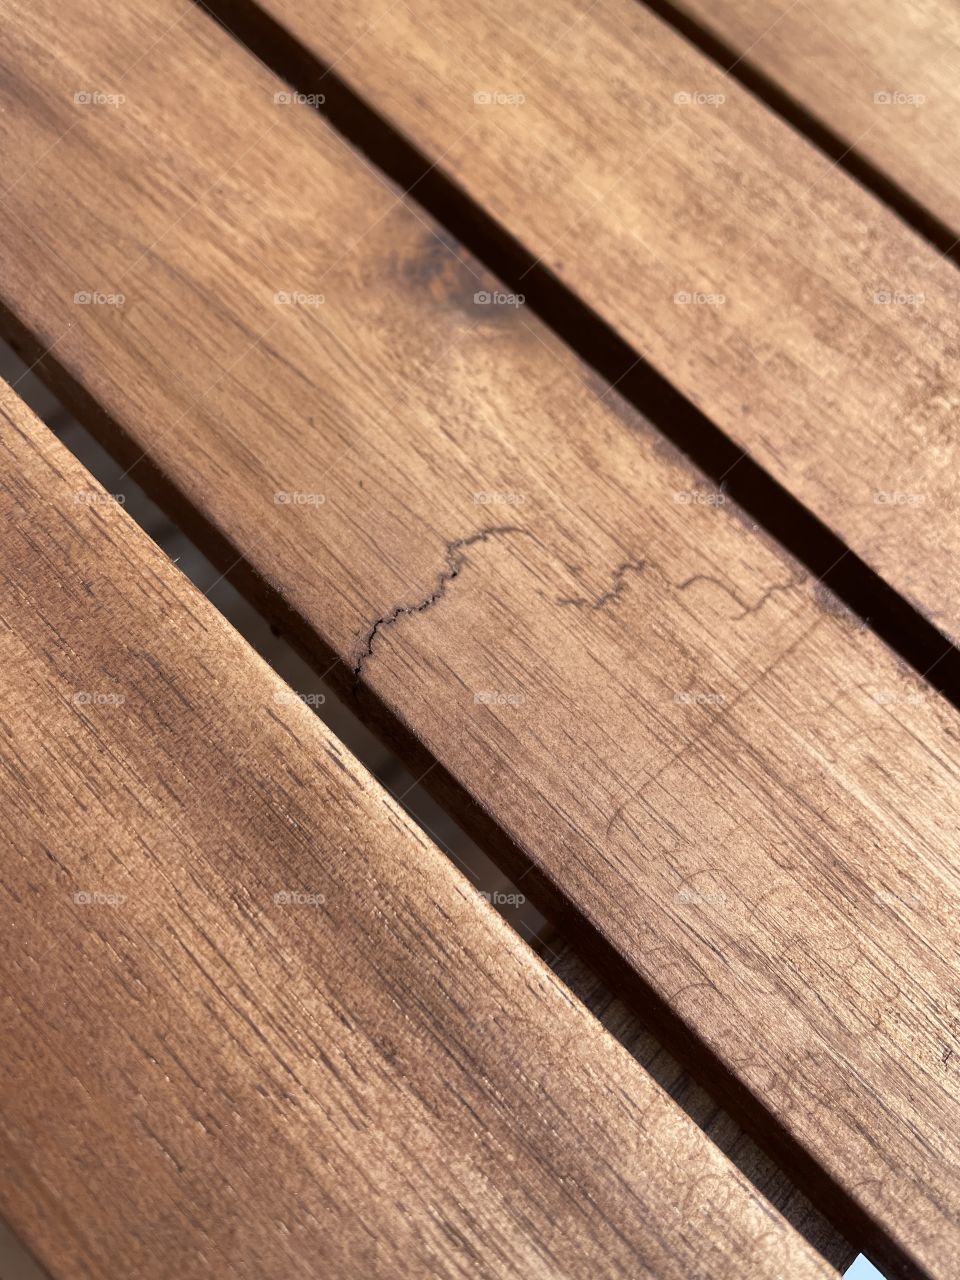 Cracked wood 